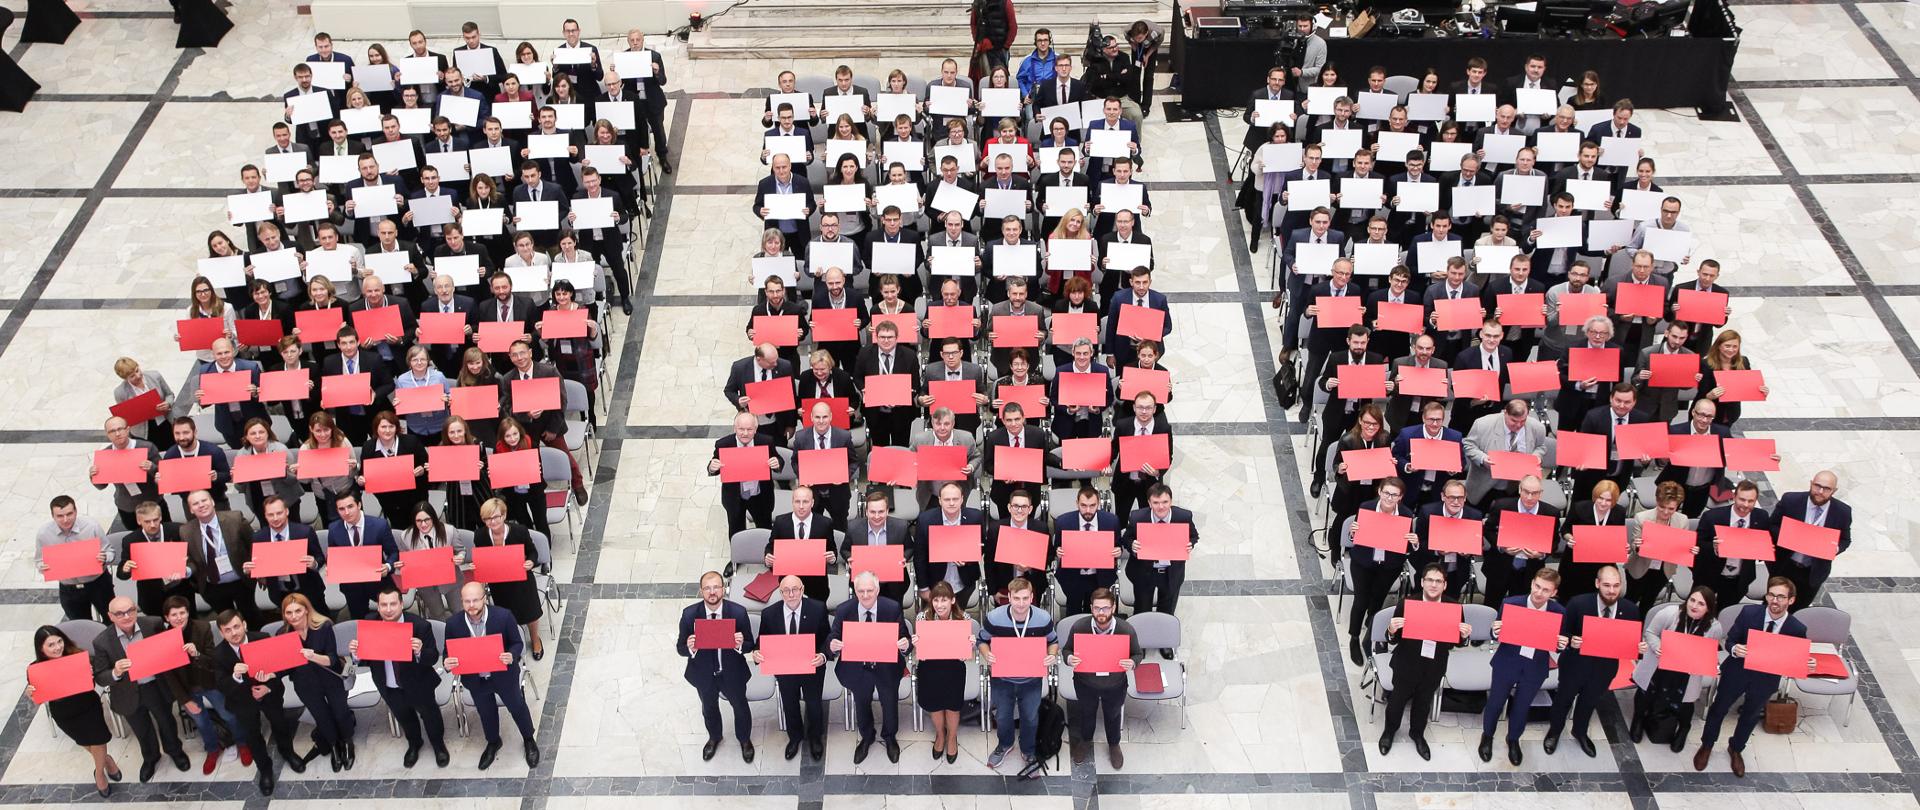 Na zdjęciu trzy rzędy stojących ludzi - każdy z nich trzyma biały lub czerwony karton. Dzięki temu tworzy się biało-czerwona flaga.